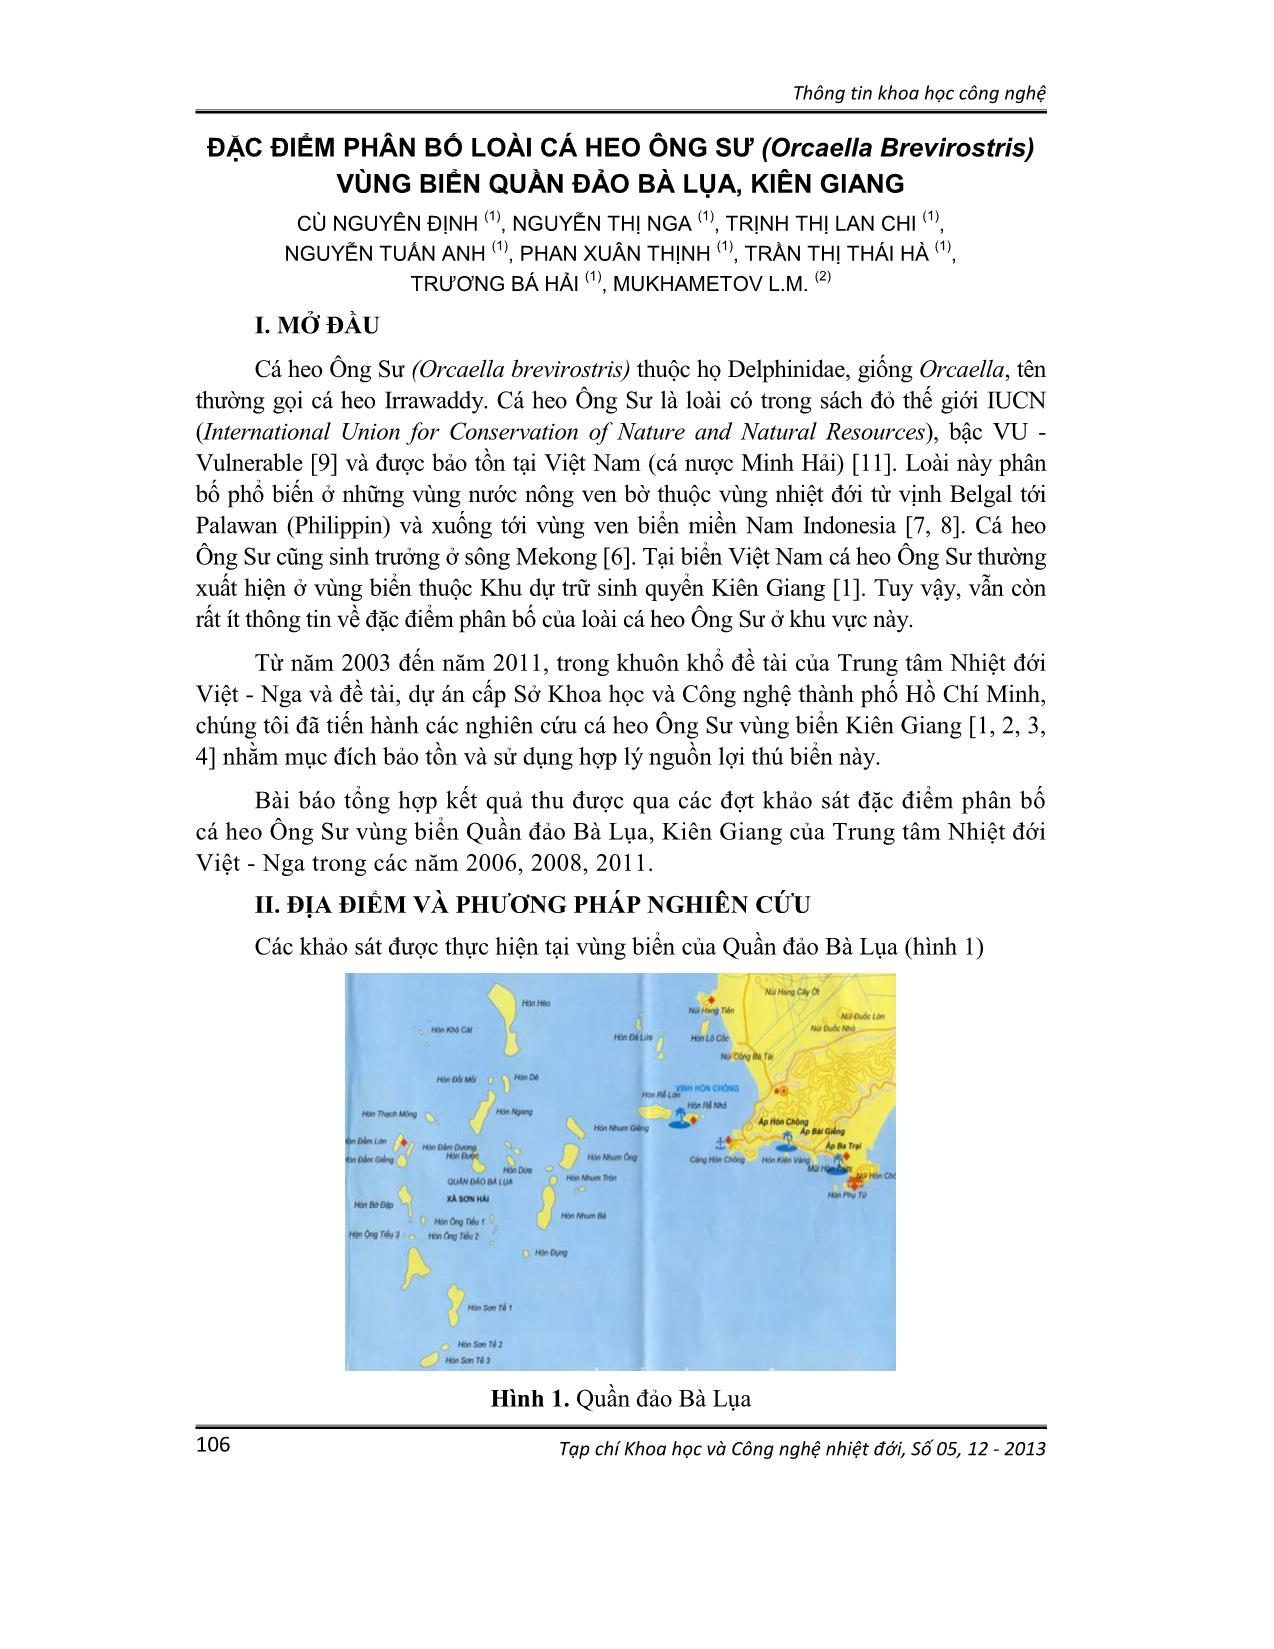 Đặc điểm phân bố loài cá heo ông sư (orcaella brevirostris) vùng biển quần đảo Bà Lụa, Kiên Giang trang 1